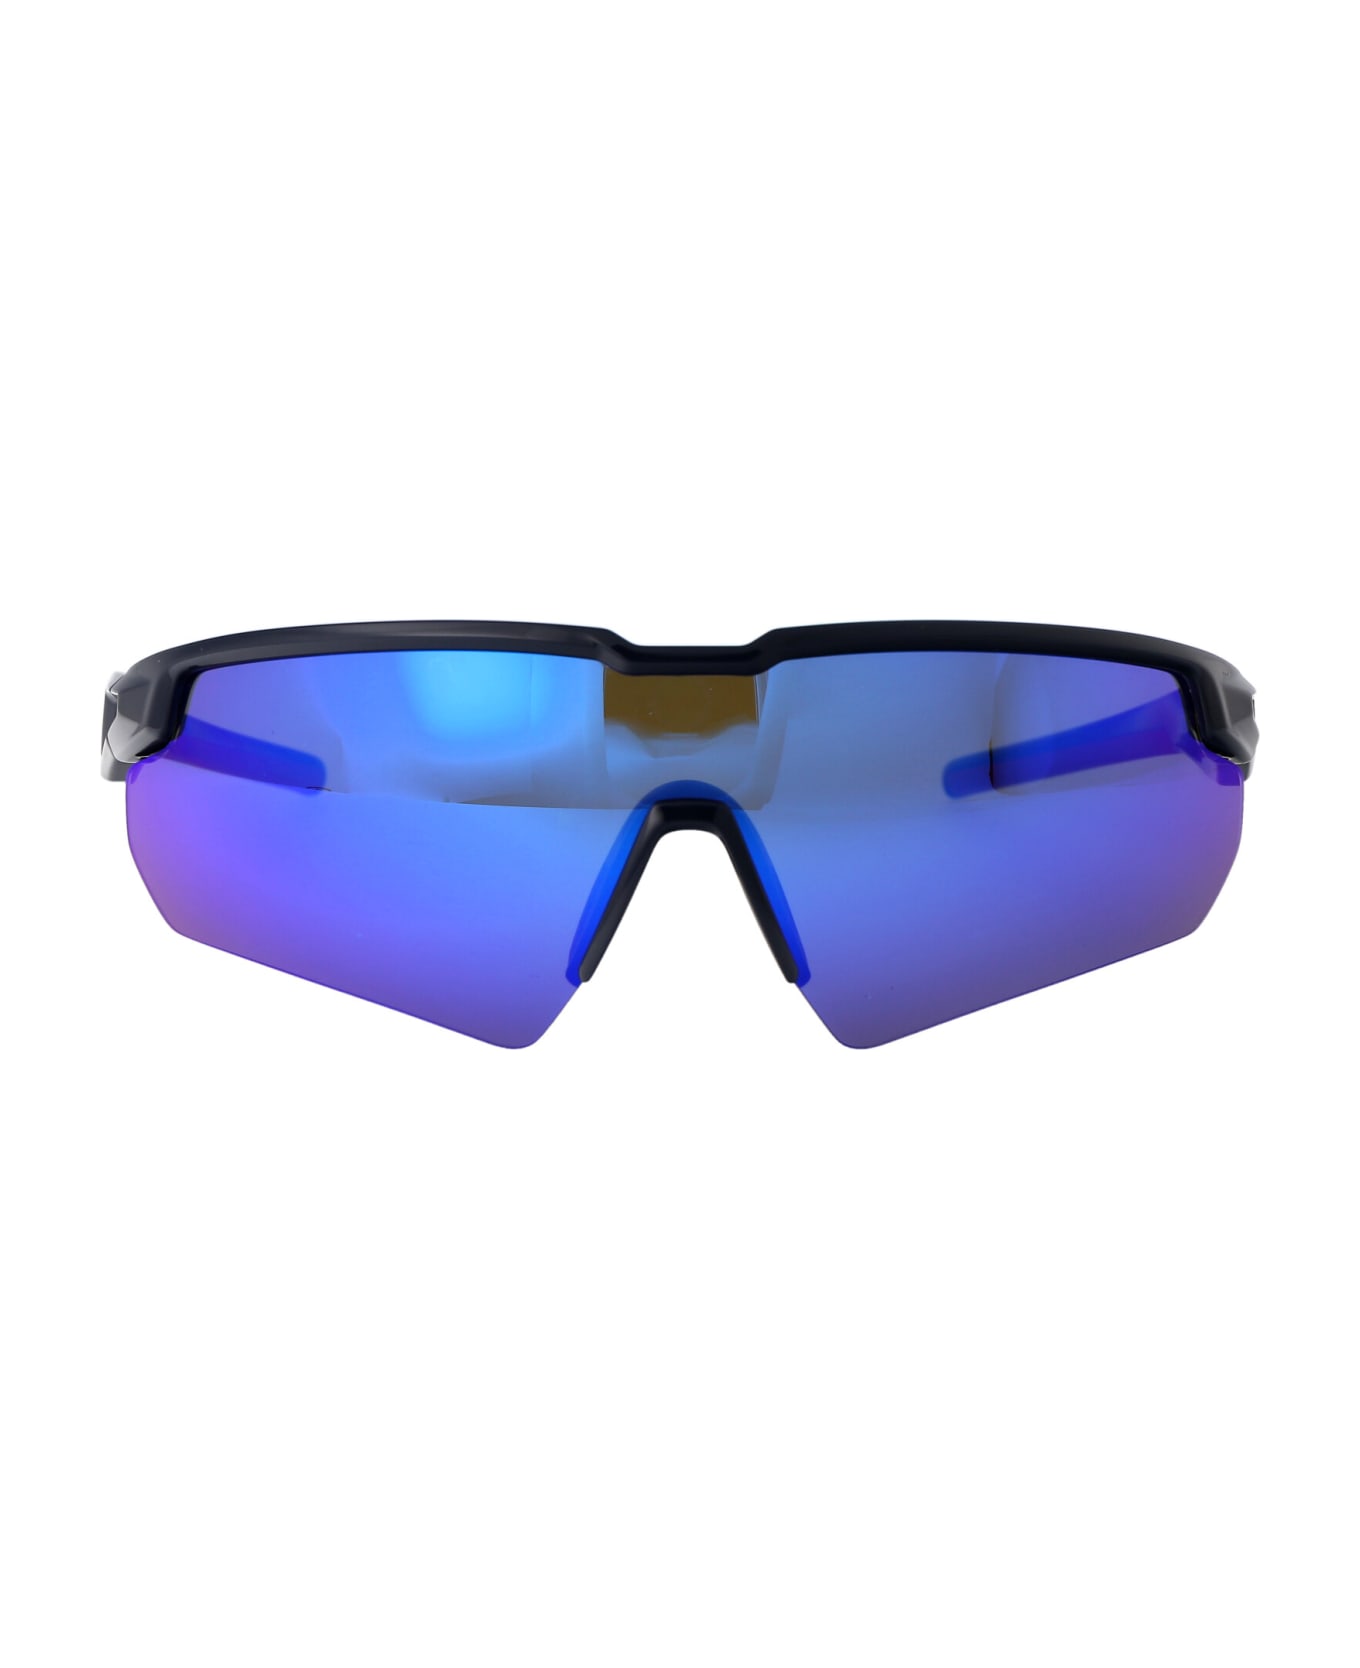 Tommy Hilfiger Tj 0098/s Sunglasses - PJPZ0 BLUE